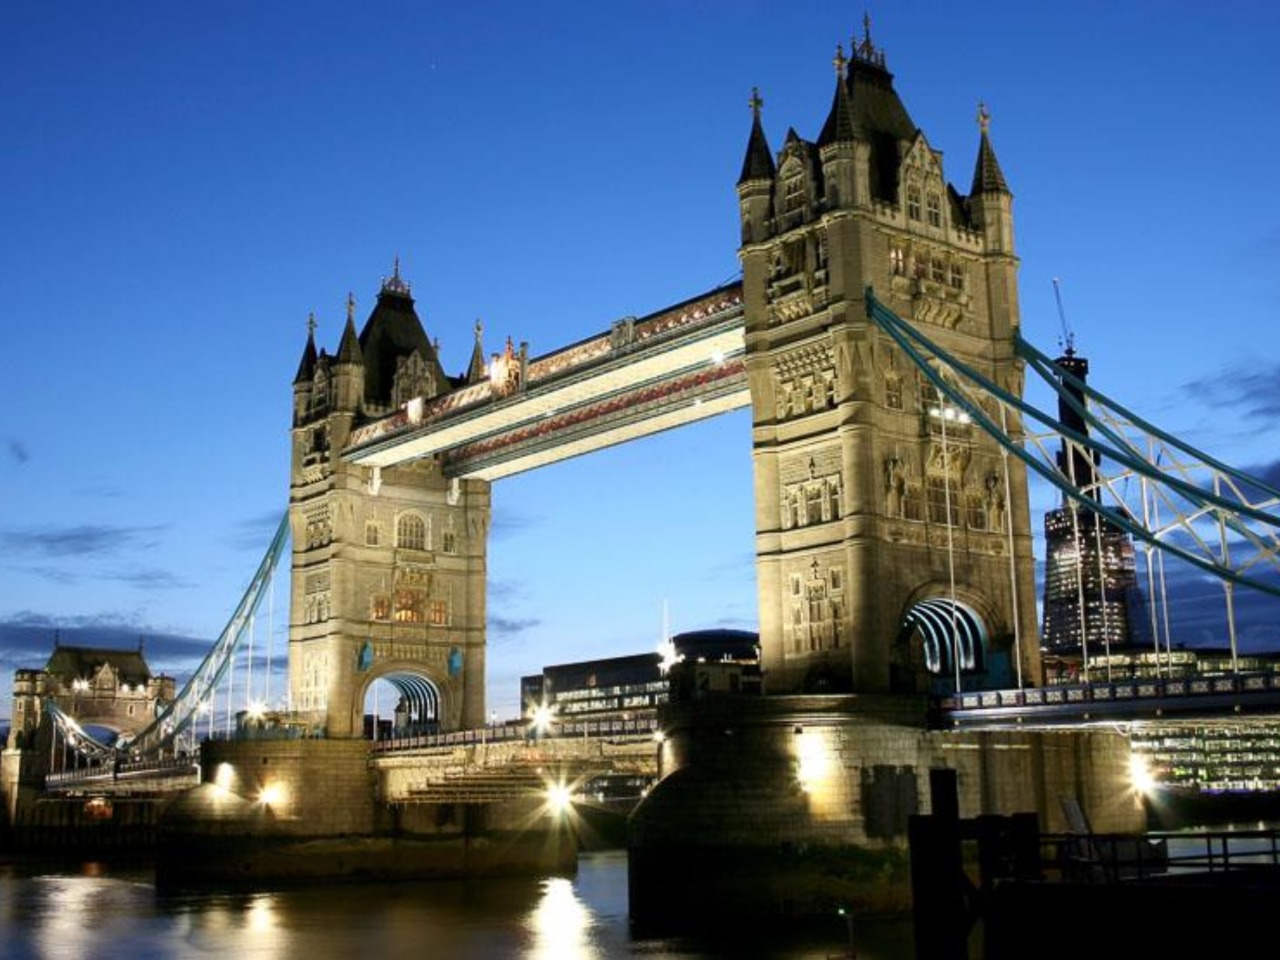 London Bridge приглашает | Цена 195£, отзывы, описание экскурсии